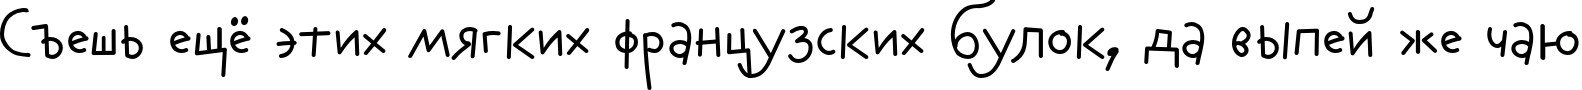 Пример написания шрифтом AuktyonZ текста на русском